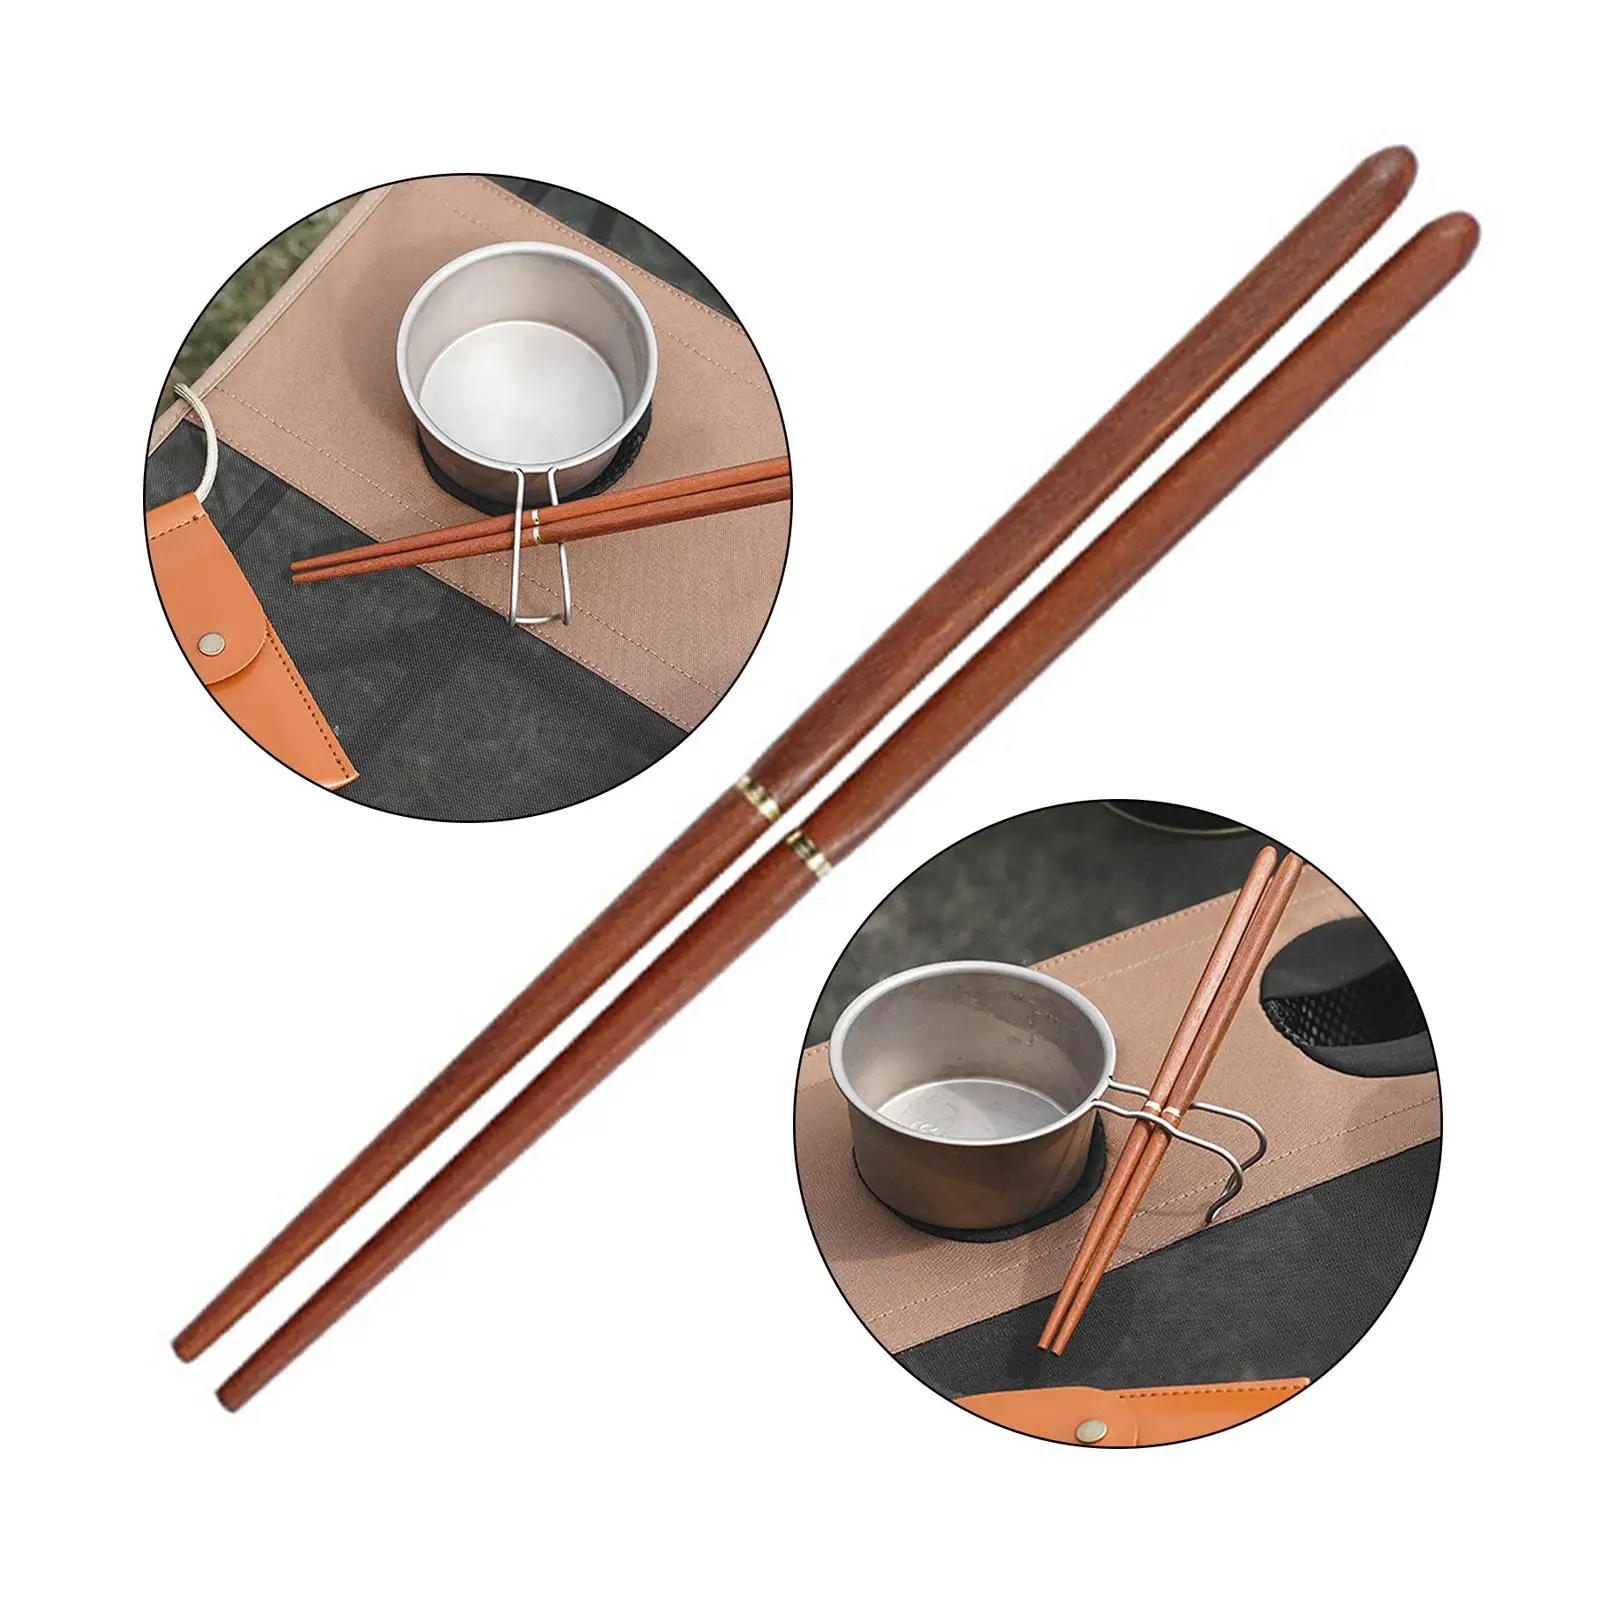 Reusable Foldable Chopsticks with Storage Pouch Detachable Chopsticks for